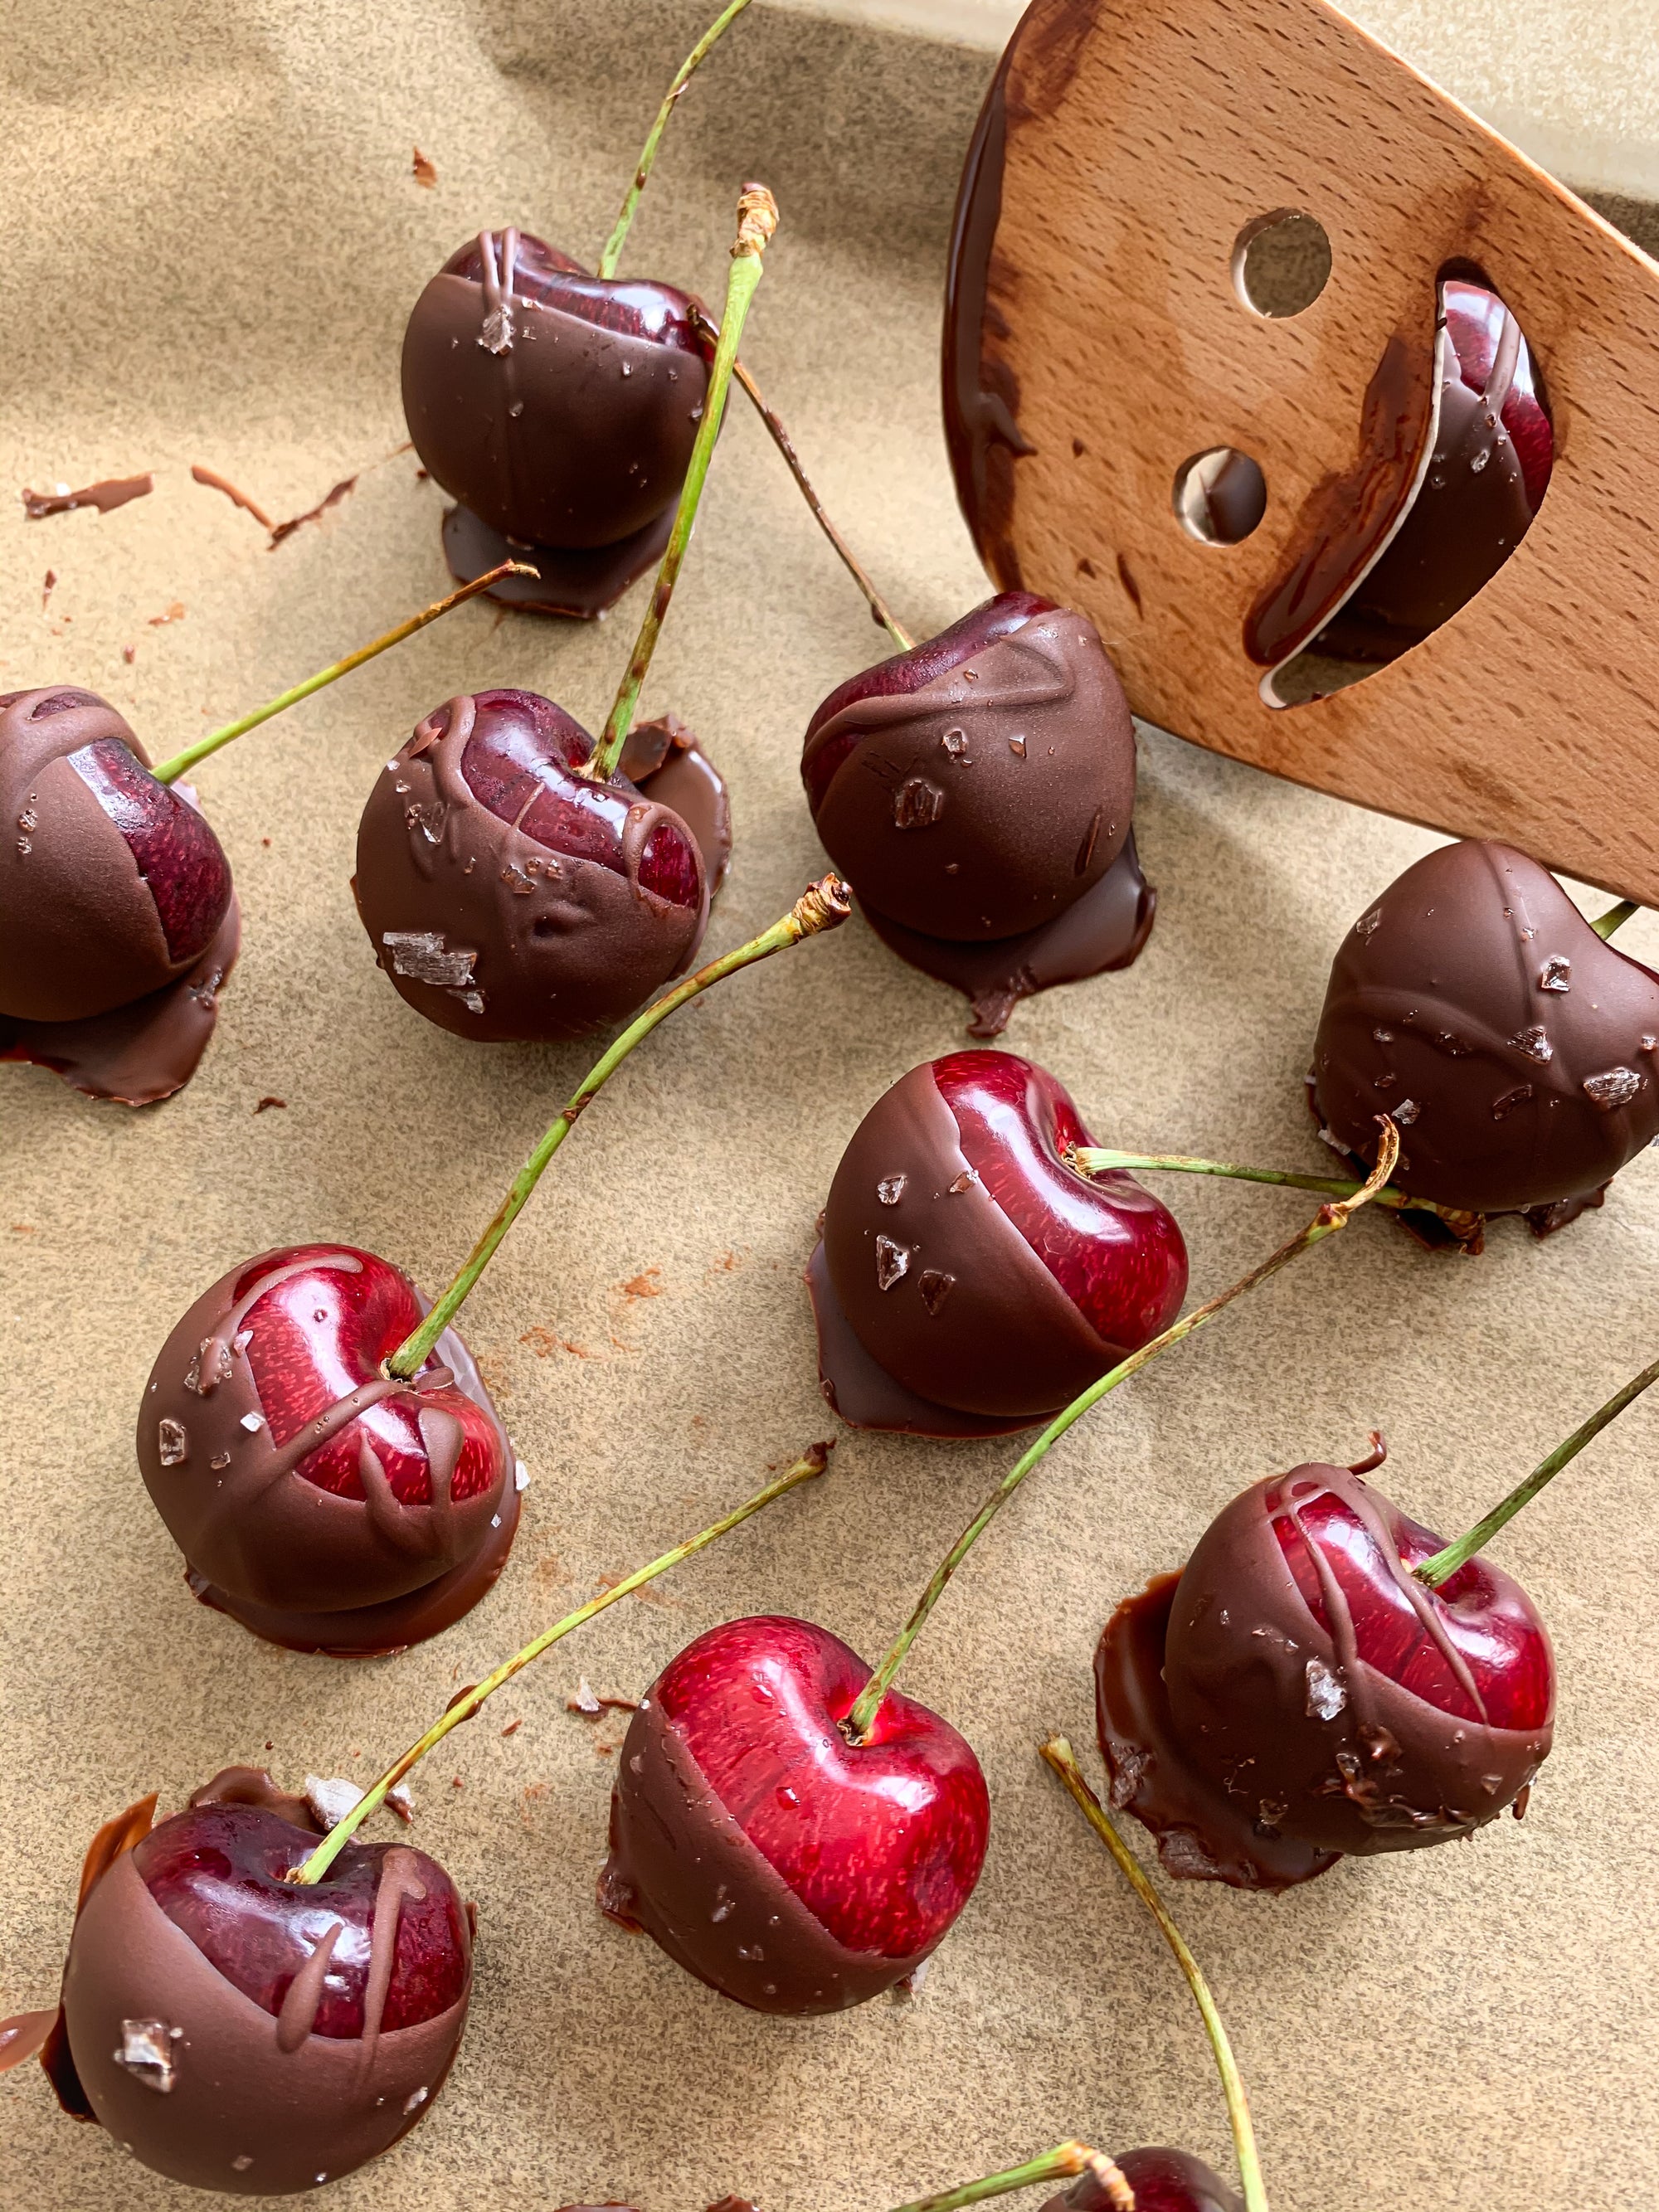 Dark Chocolate Covered Cherries